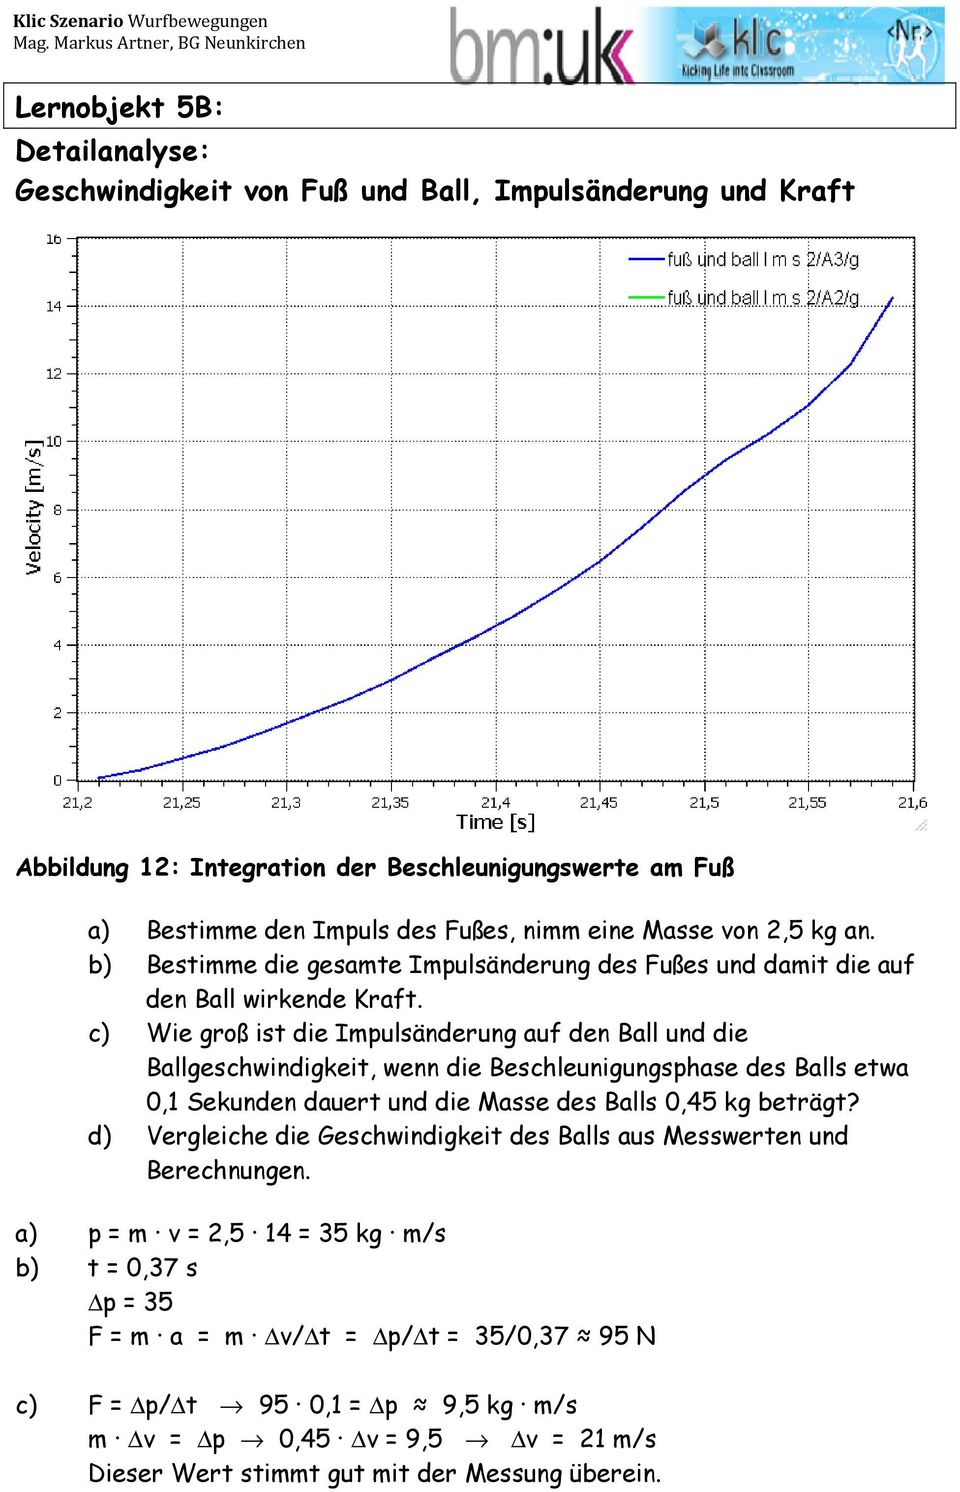 c) Wie groß ist die Impulsänderung auf den Ball und die Ballgeschwindigkeit, wenn die Beschleunigungsphase des Balls etwa 0,1 Sekunden dauert und die Masse des Balls 0,45 kg beträgt?